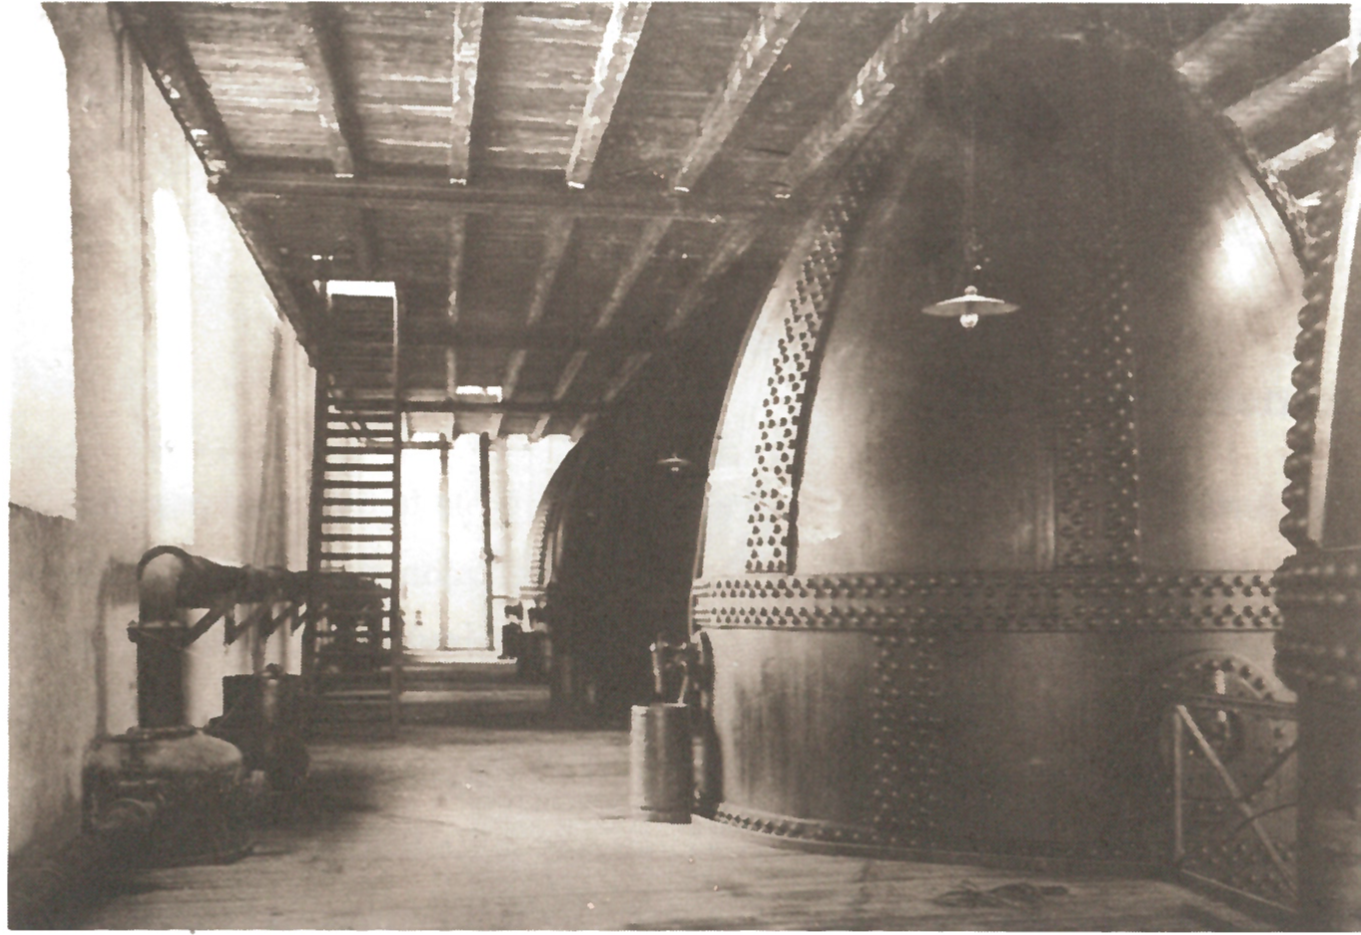 Fig.4: Cellulose boiler at Borregaard sawmill. Ill.: Foredlet virke: historien om Borregaard, Bergh & Lange (1989).